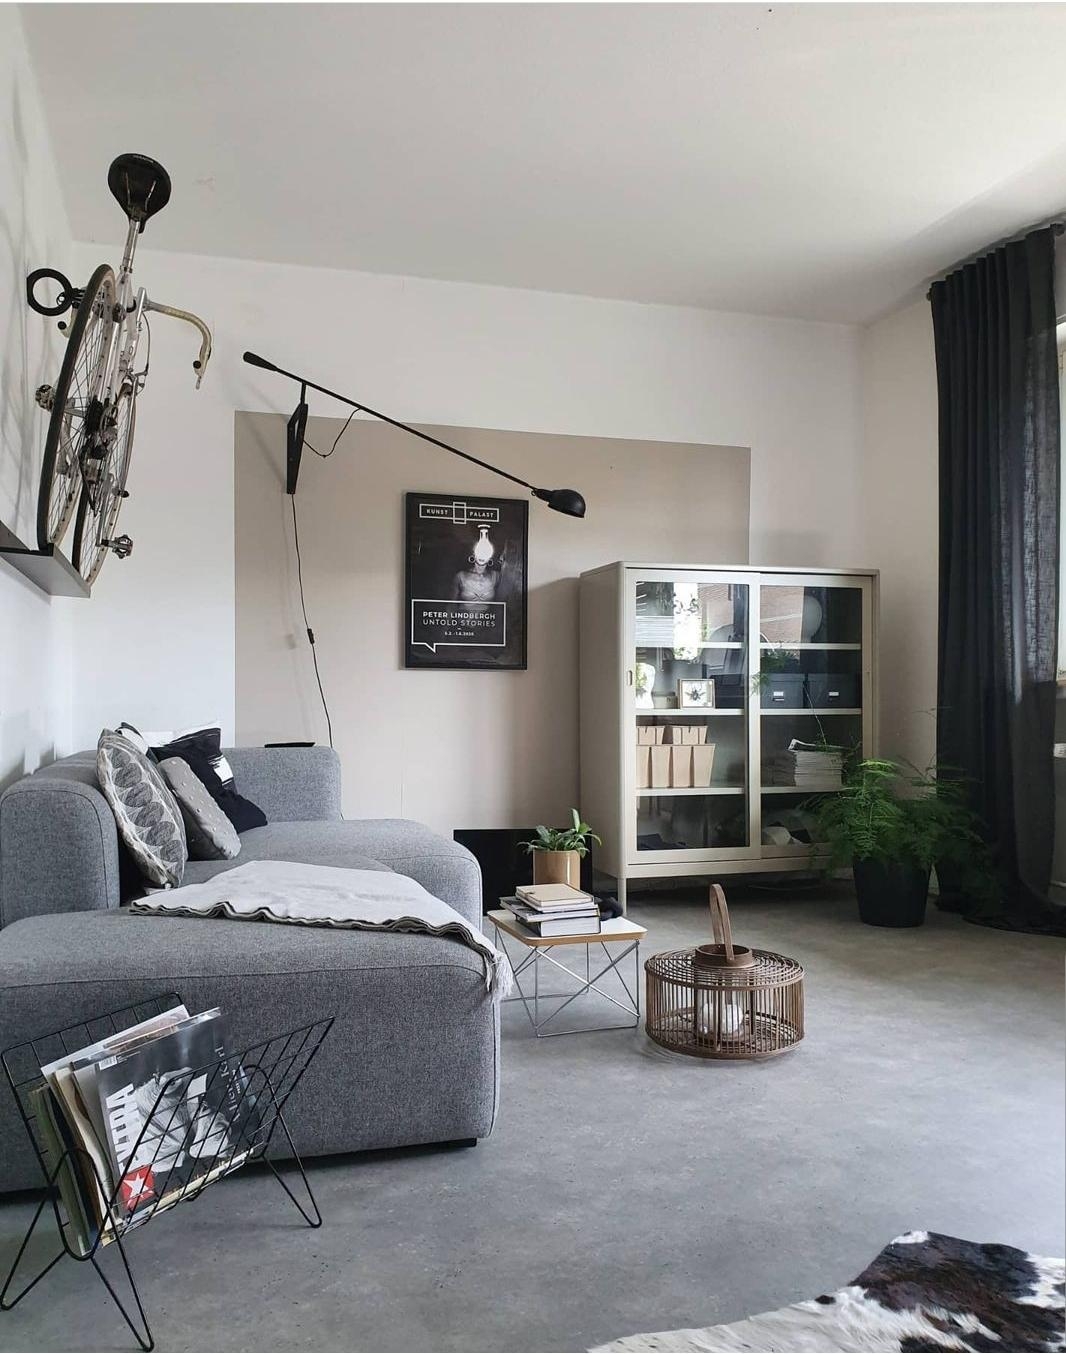 Veränderung im Wohnzimmer 
#bike #onthewall #vintage #peugeot #sofa #couch #livingroom #wohnzimmer #wohnen